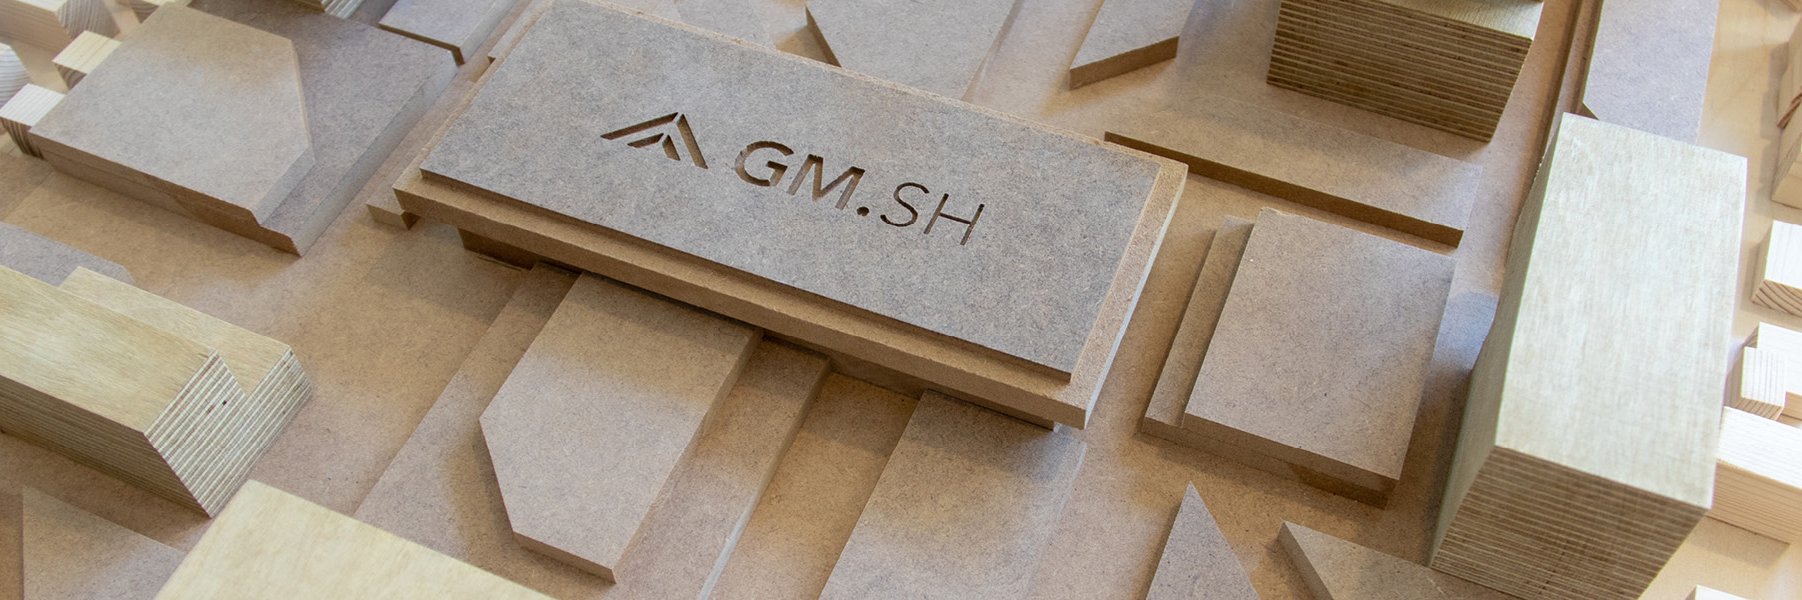 Holz-Modell der GMSH